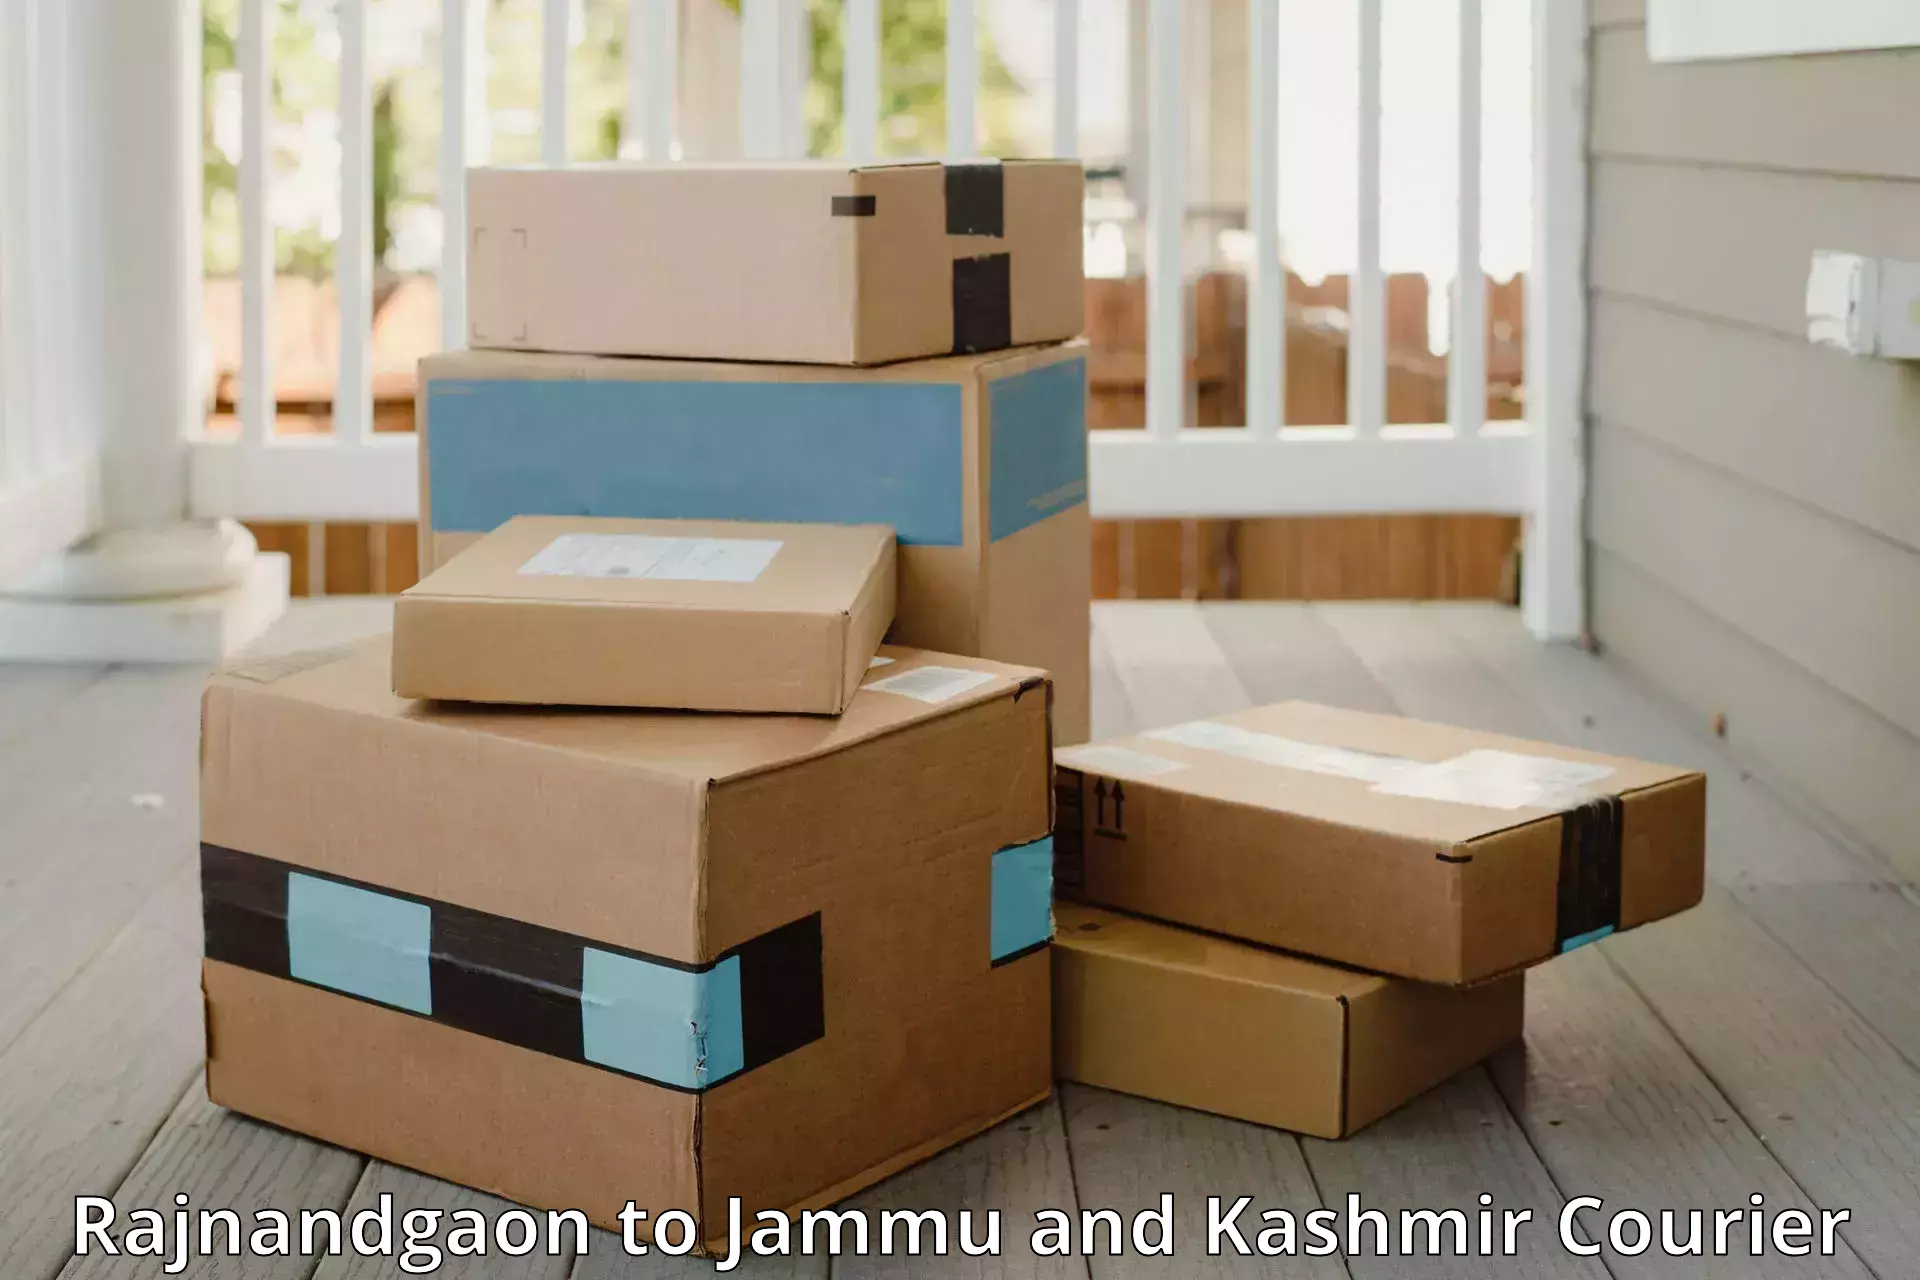 Baggage shipping experts Rajnandgaon to Kargil